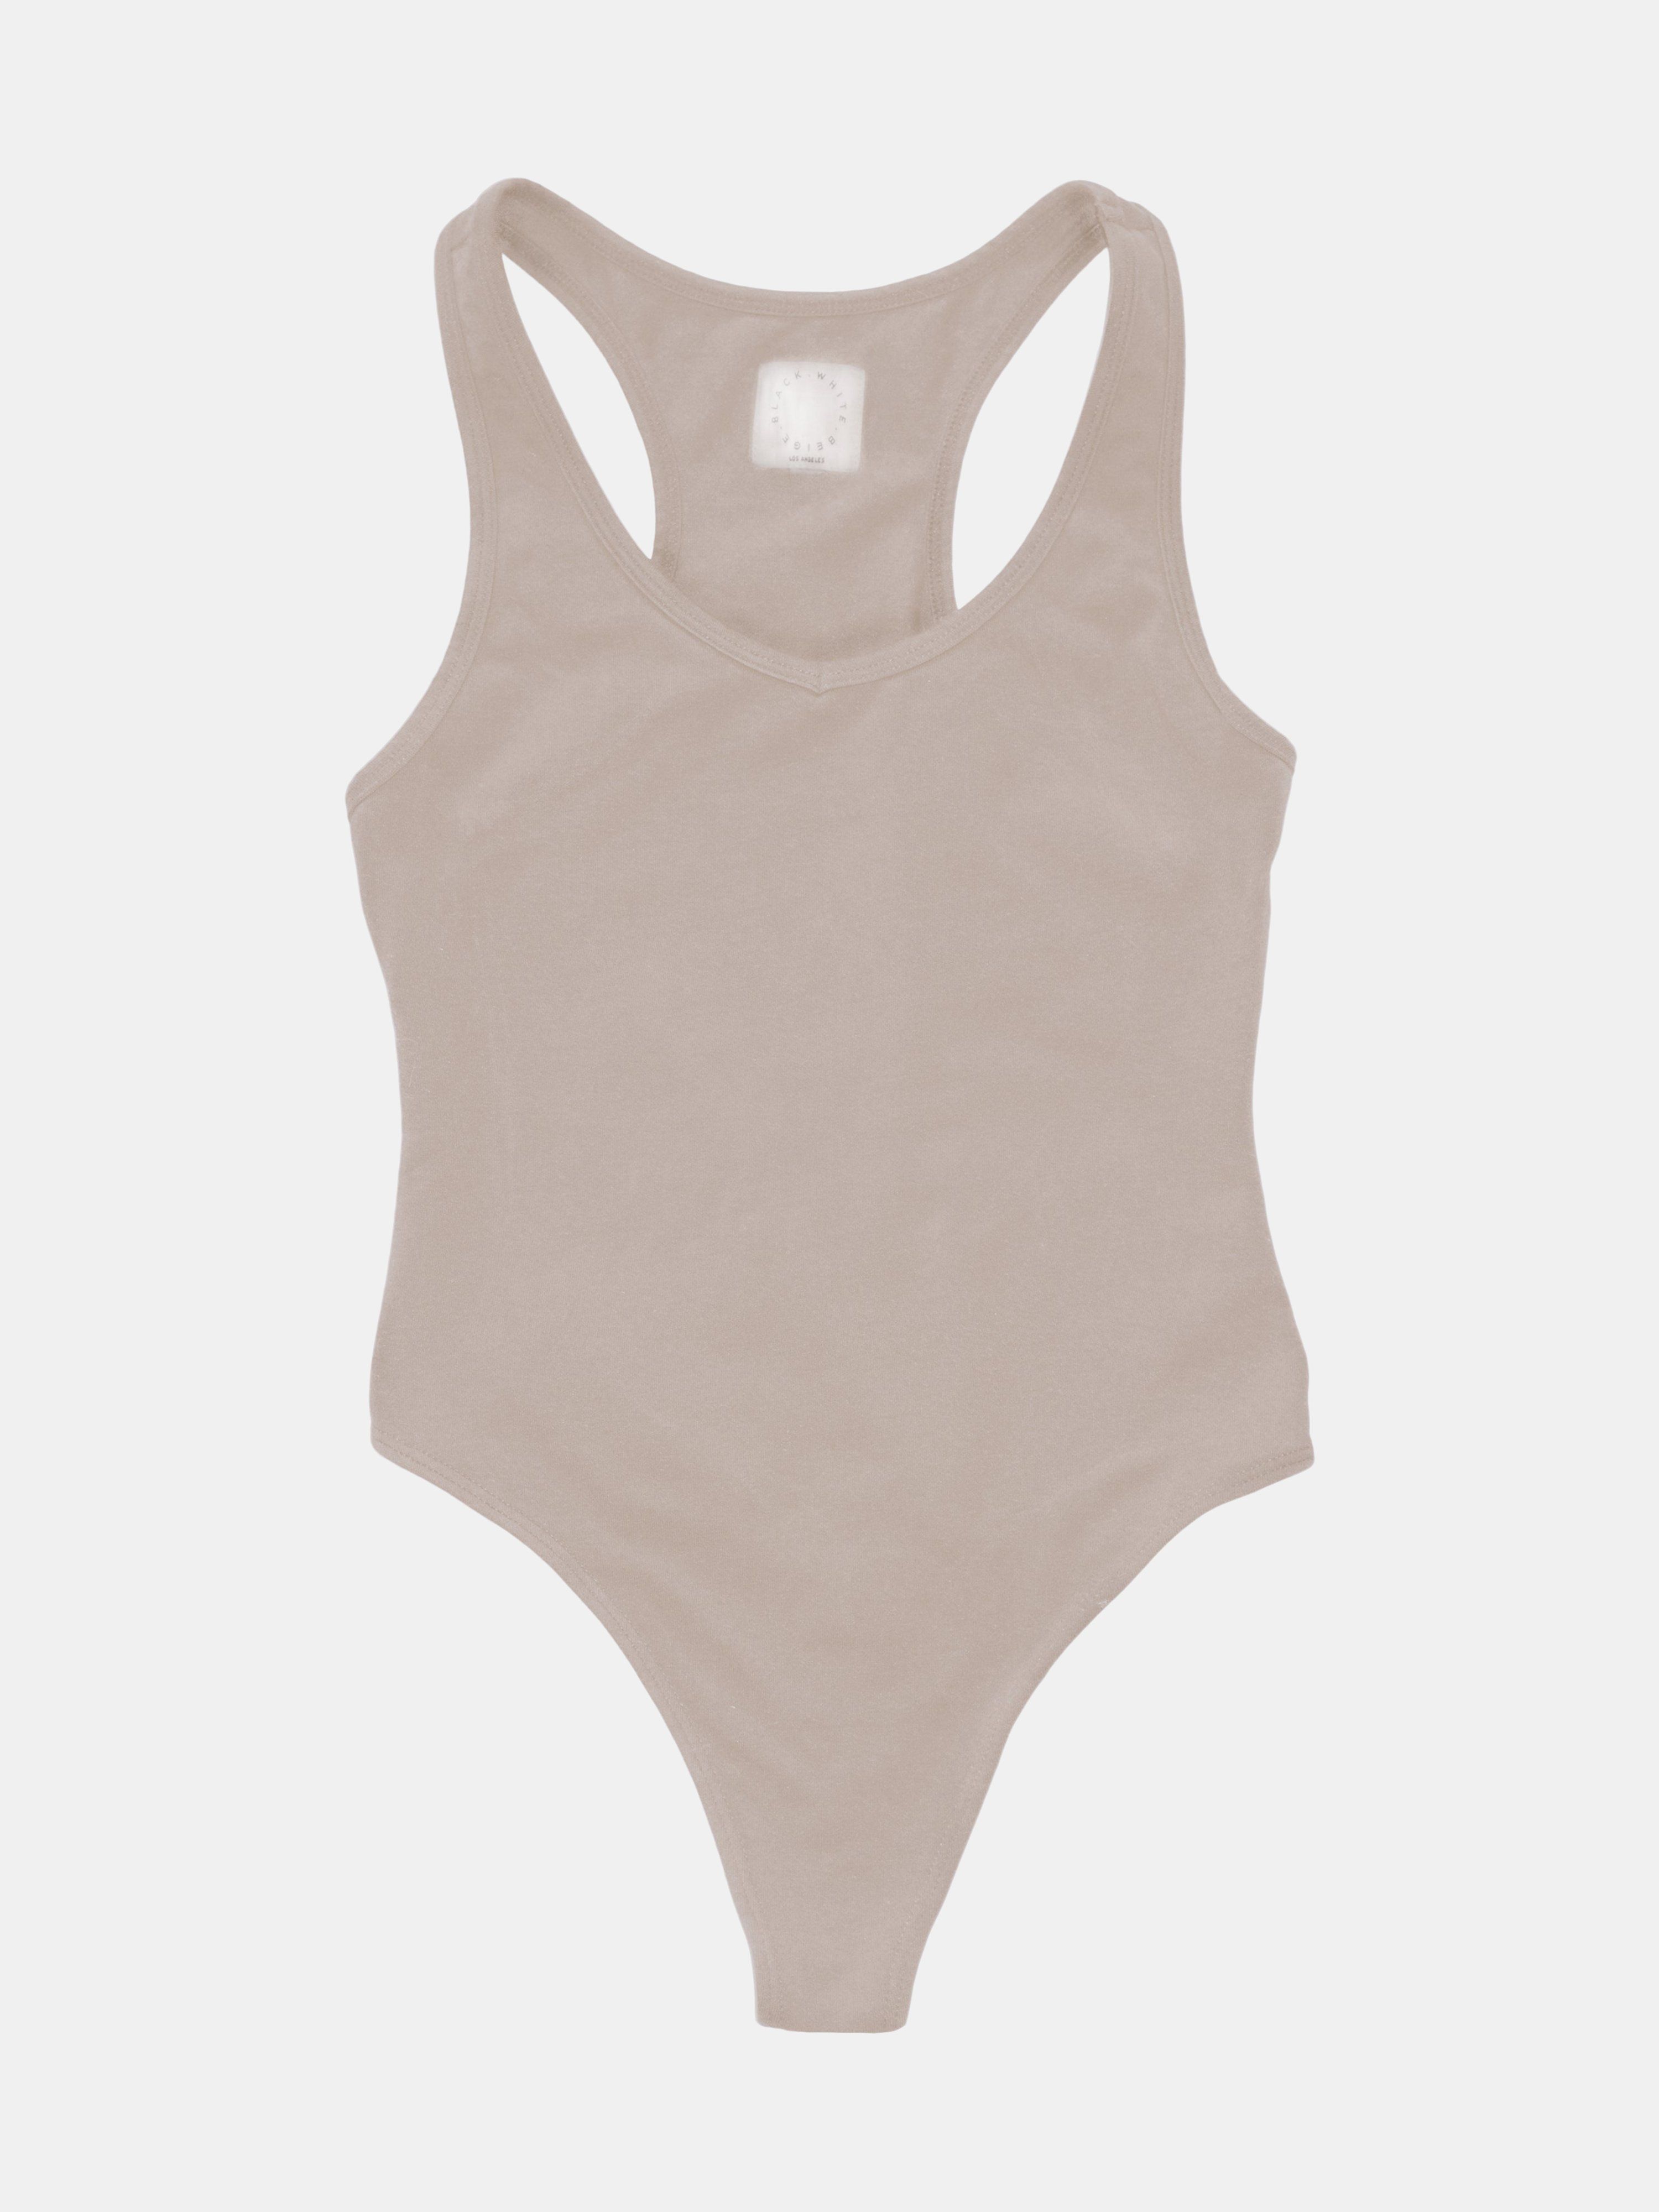 Beige Bodysuit - L - Also in: M, S, XL, XS | Verishop